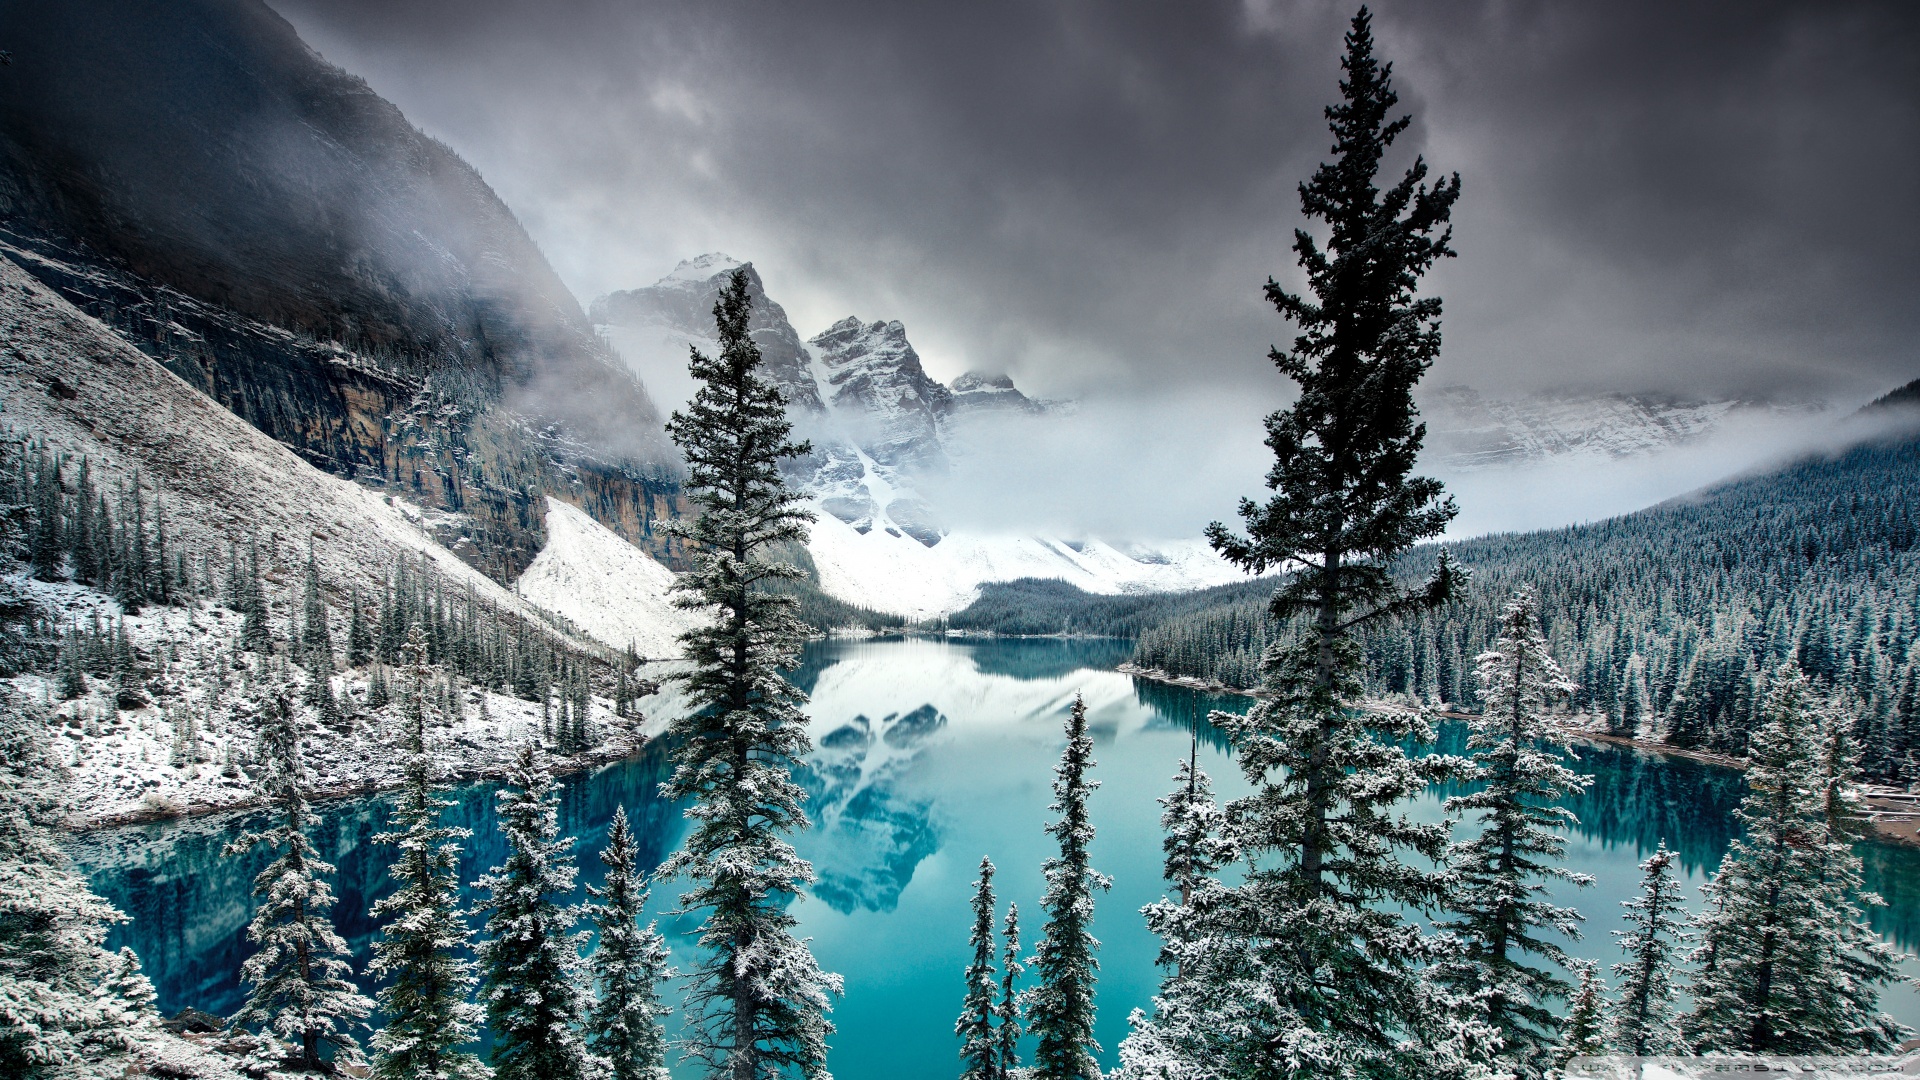 belle foto di sfondo,natura,neve,abete rosso nero a foglia corta,inverno,montagna